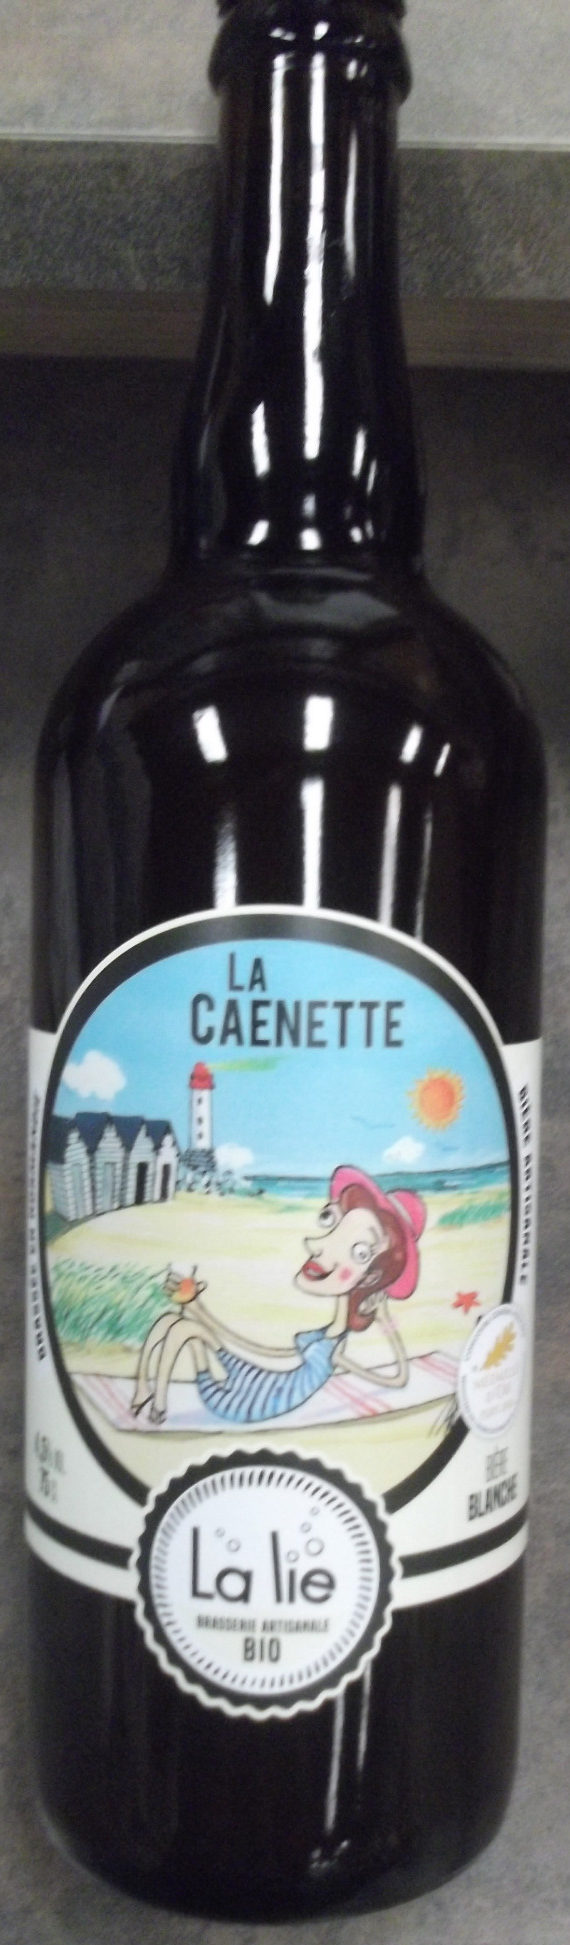 La Caenette - Product - fr